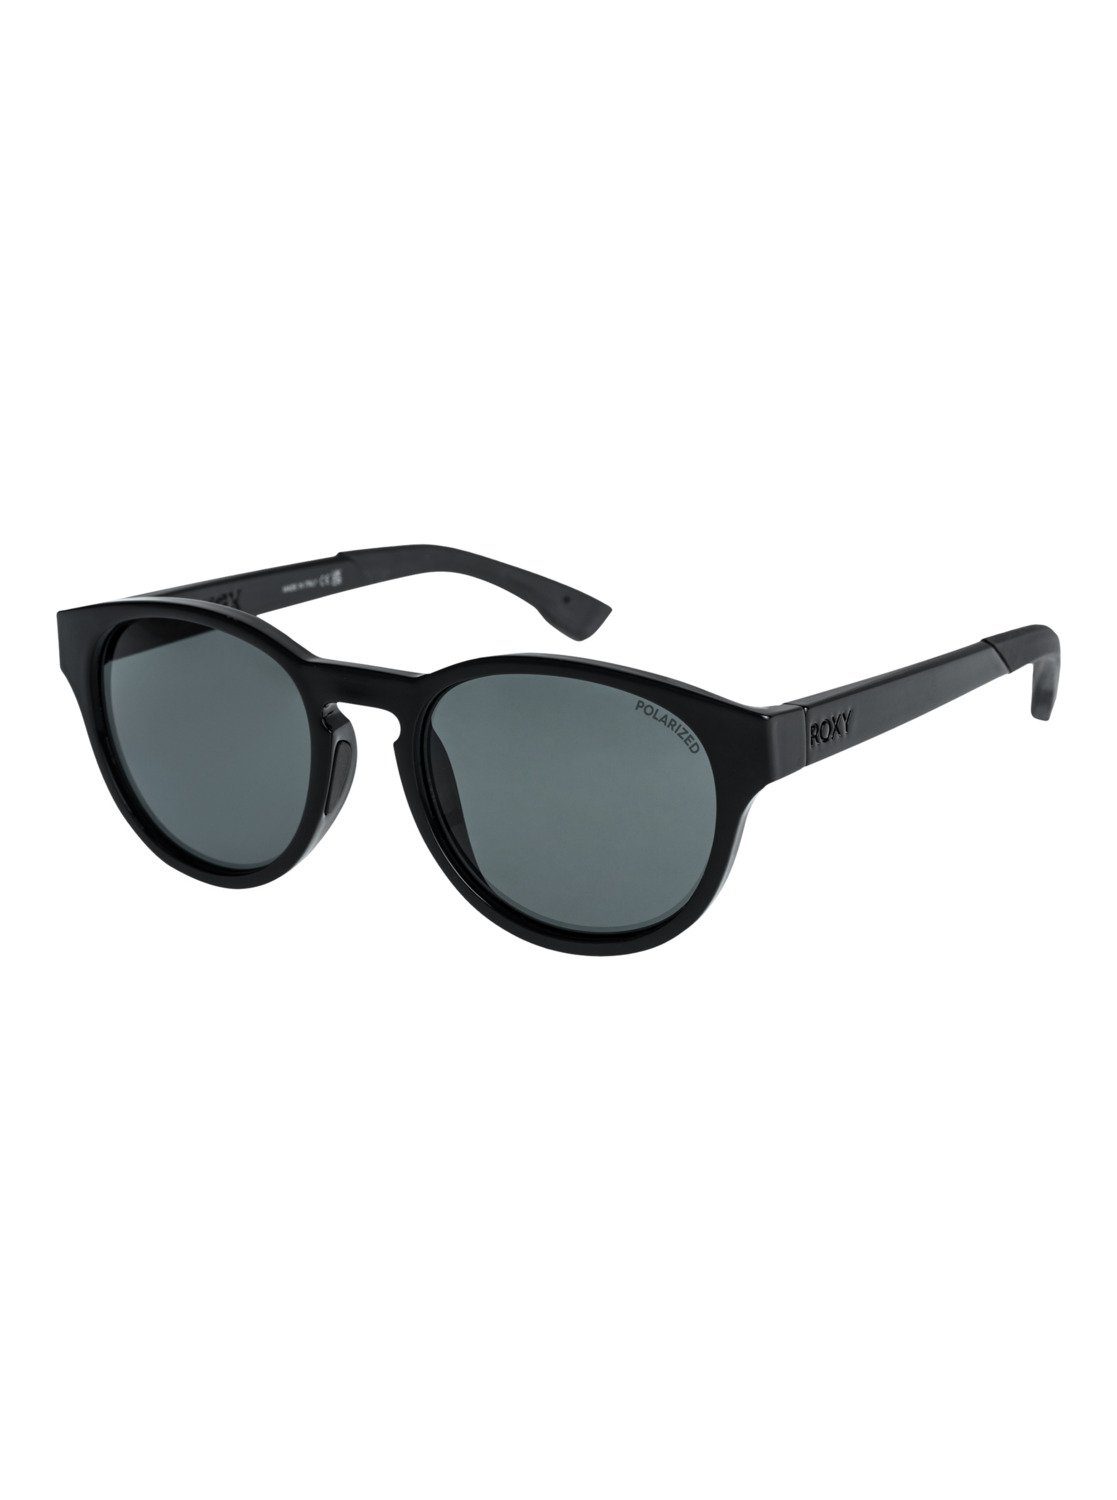 Sonnenbrille Vertex Plz Roxy P Black/Grey